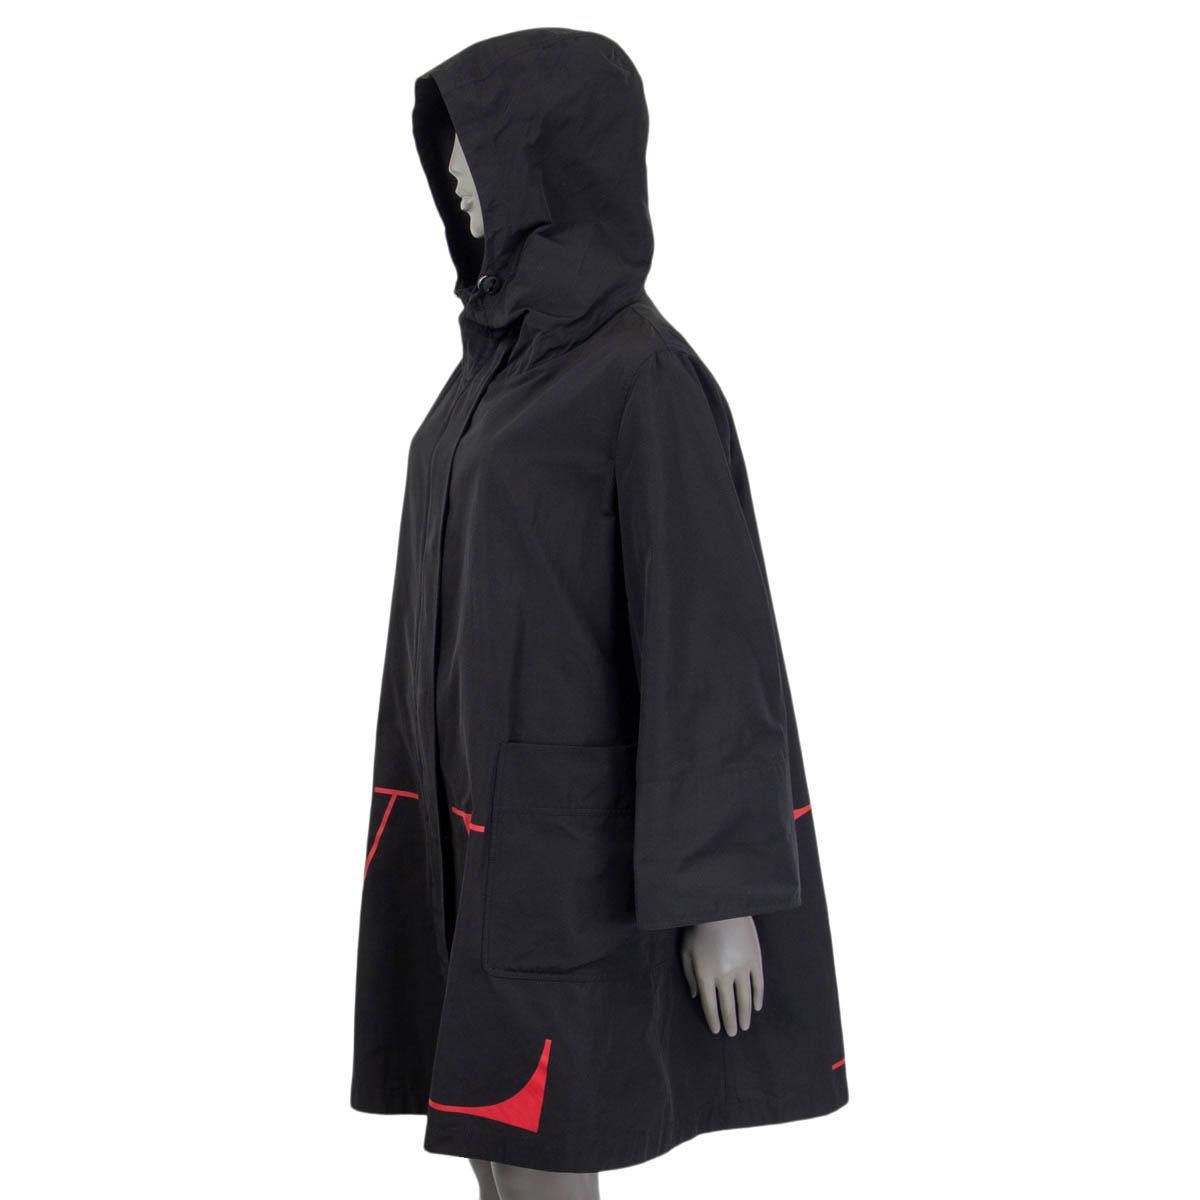 Black VALENTINO black & red cotton VLTN LOGO HOODED Coat Jacket 40 S For Sale